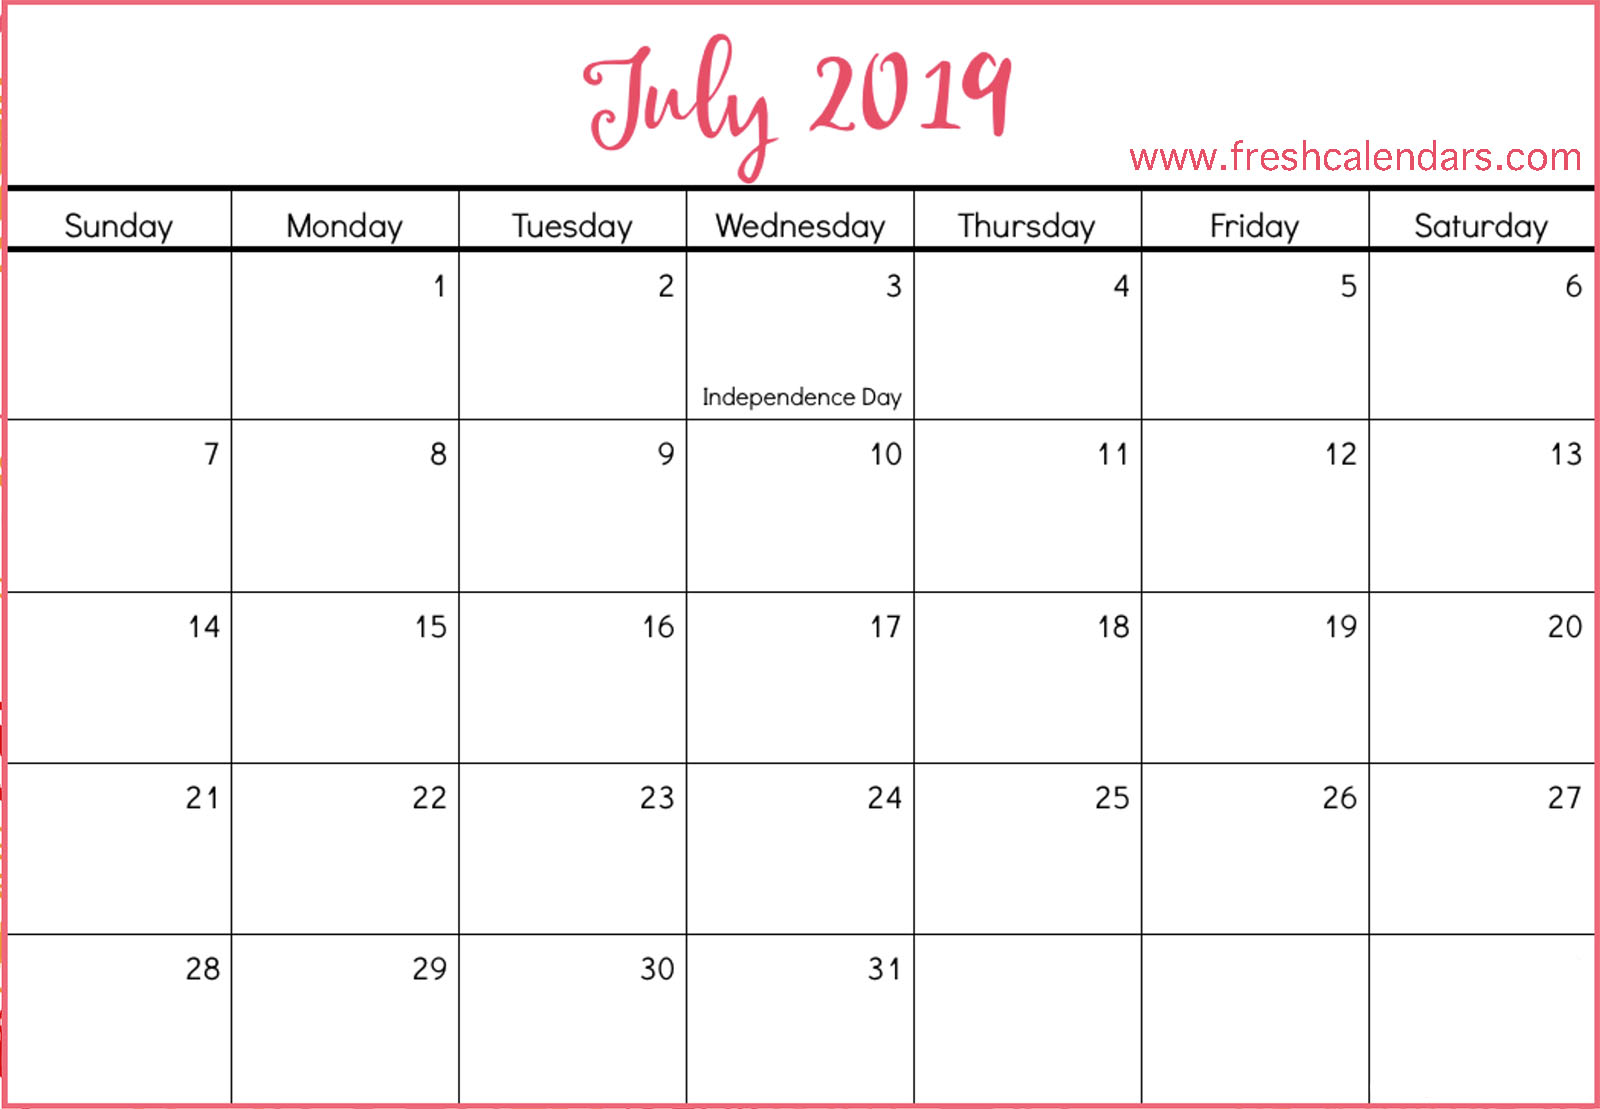 july-2019-calendar-download-christianbook-blog